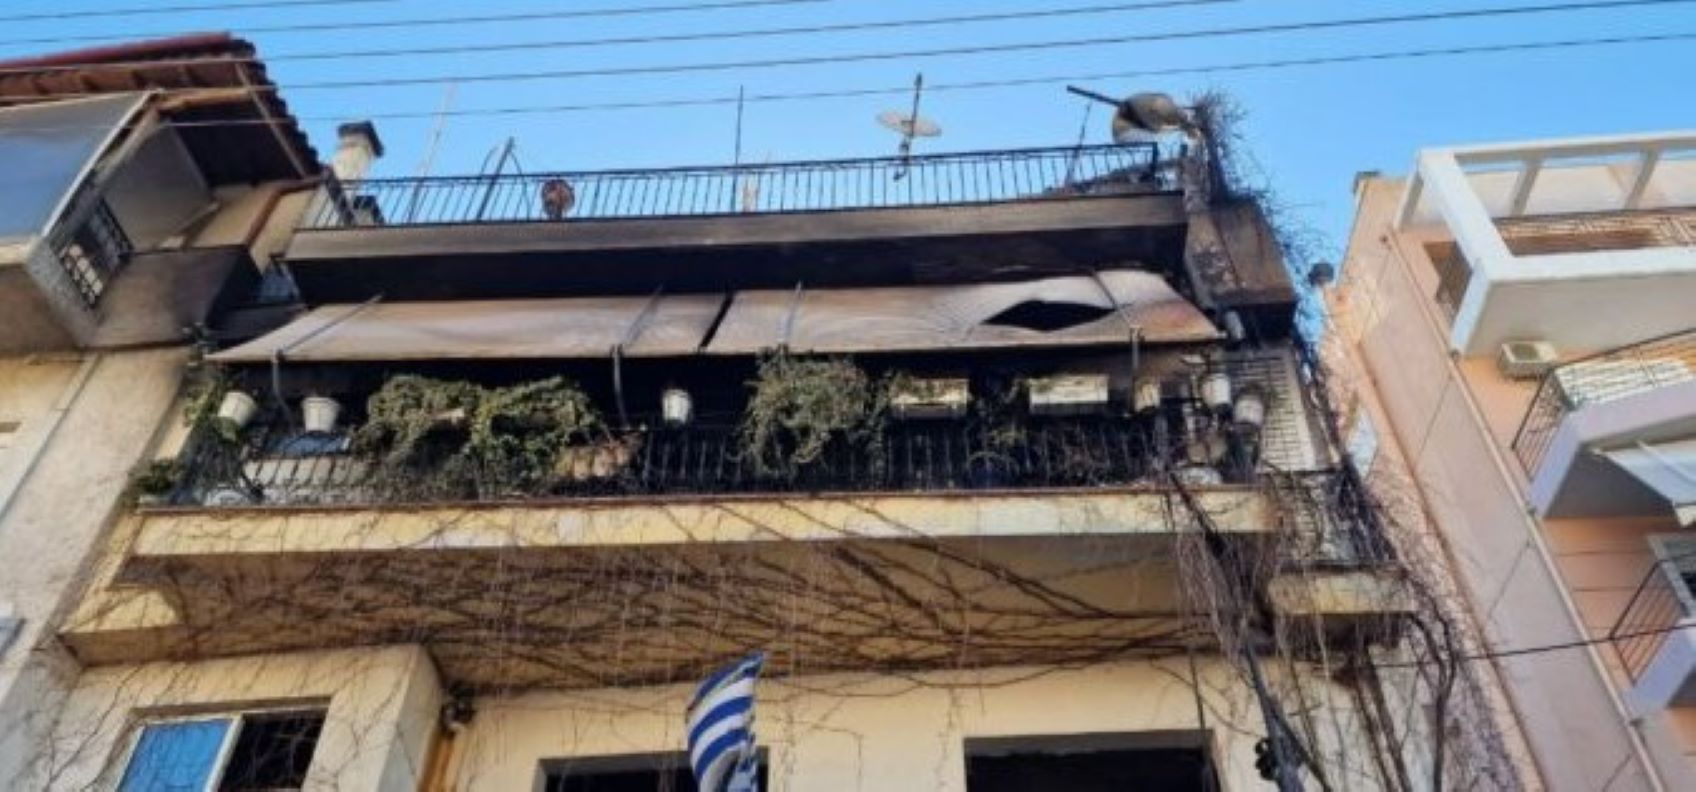 Βόλος: Οικογένεια ζητάει προσωρινή στέγη μετά την φωτιά που κατέστρεψε το σπίτι της